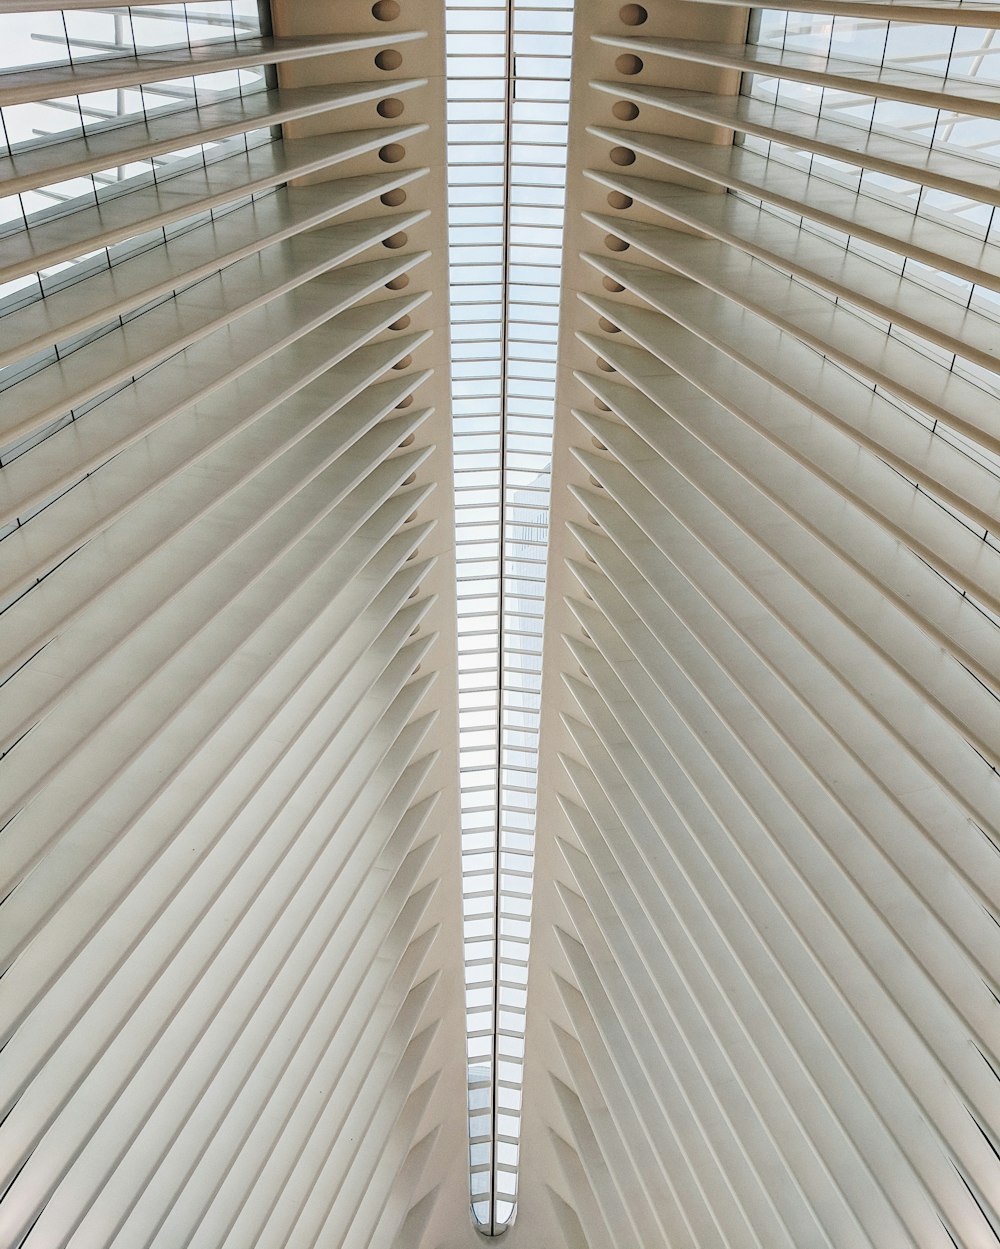 Fotografía de ángulo bajo del interior de un edificio de hormigón blanco